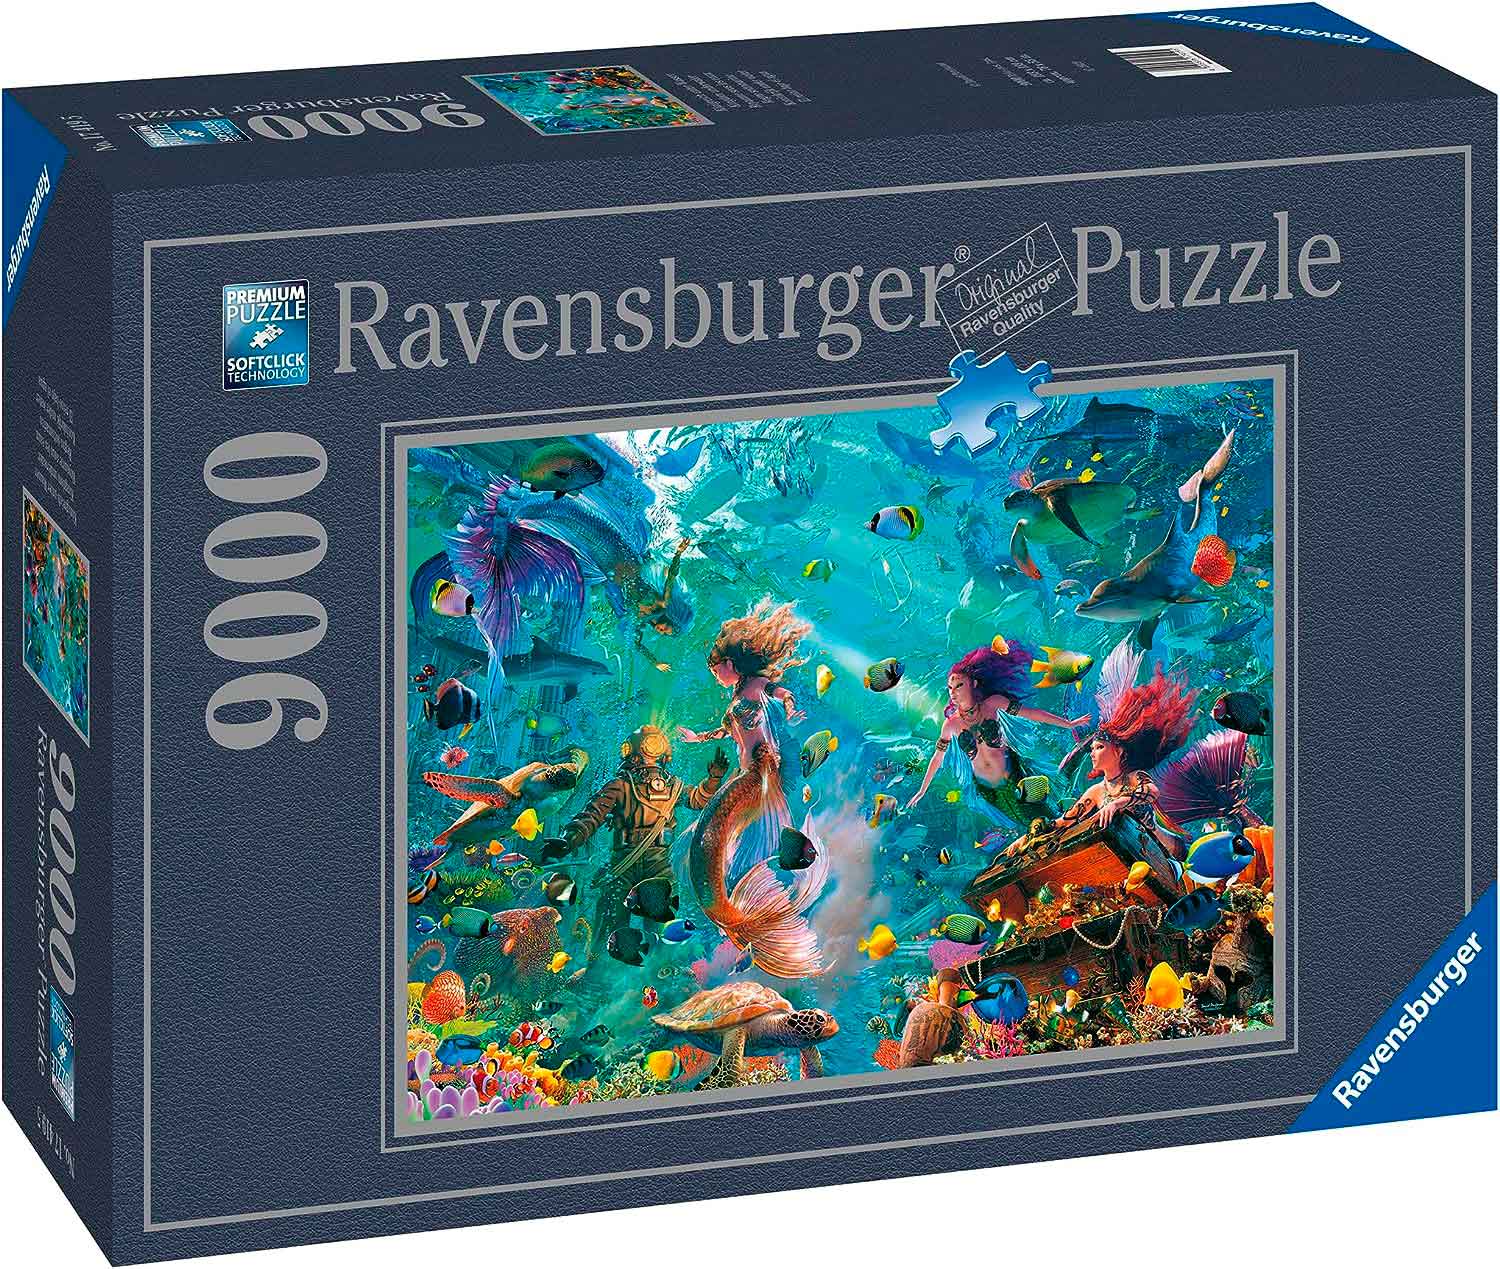 Acheter 9000 Piece Puzzles offres en ligne! 